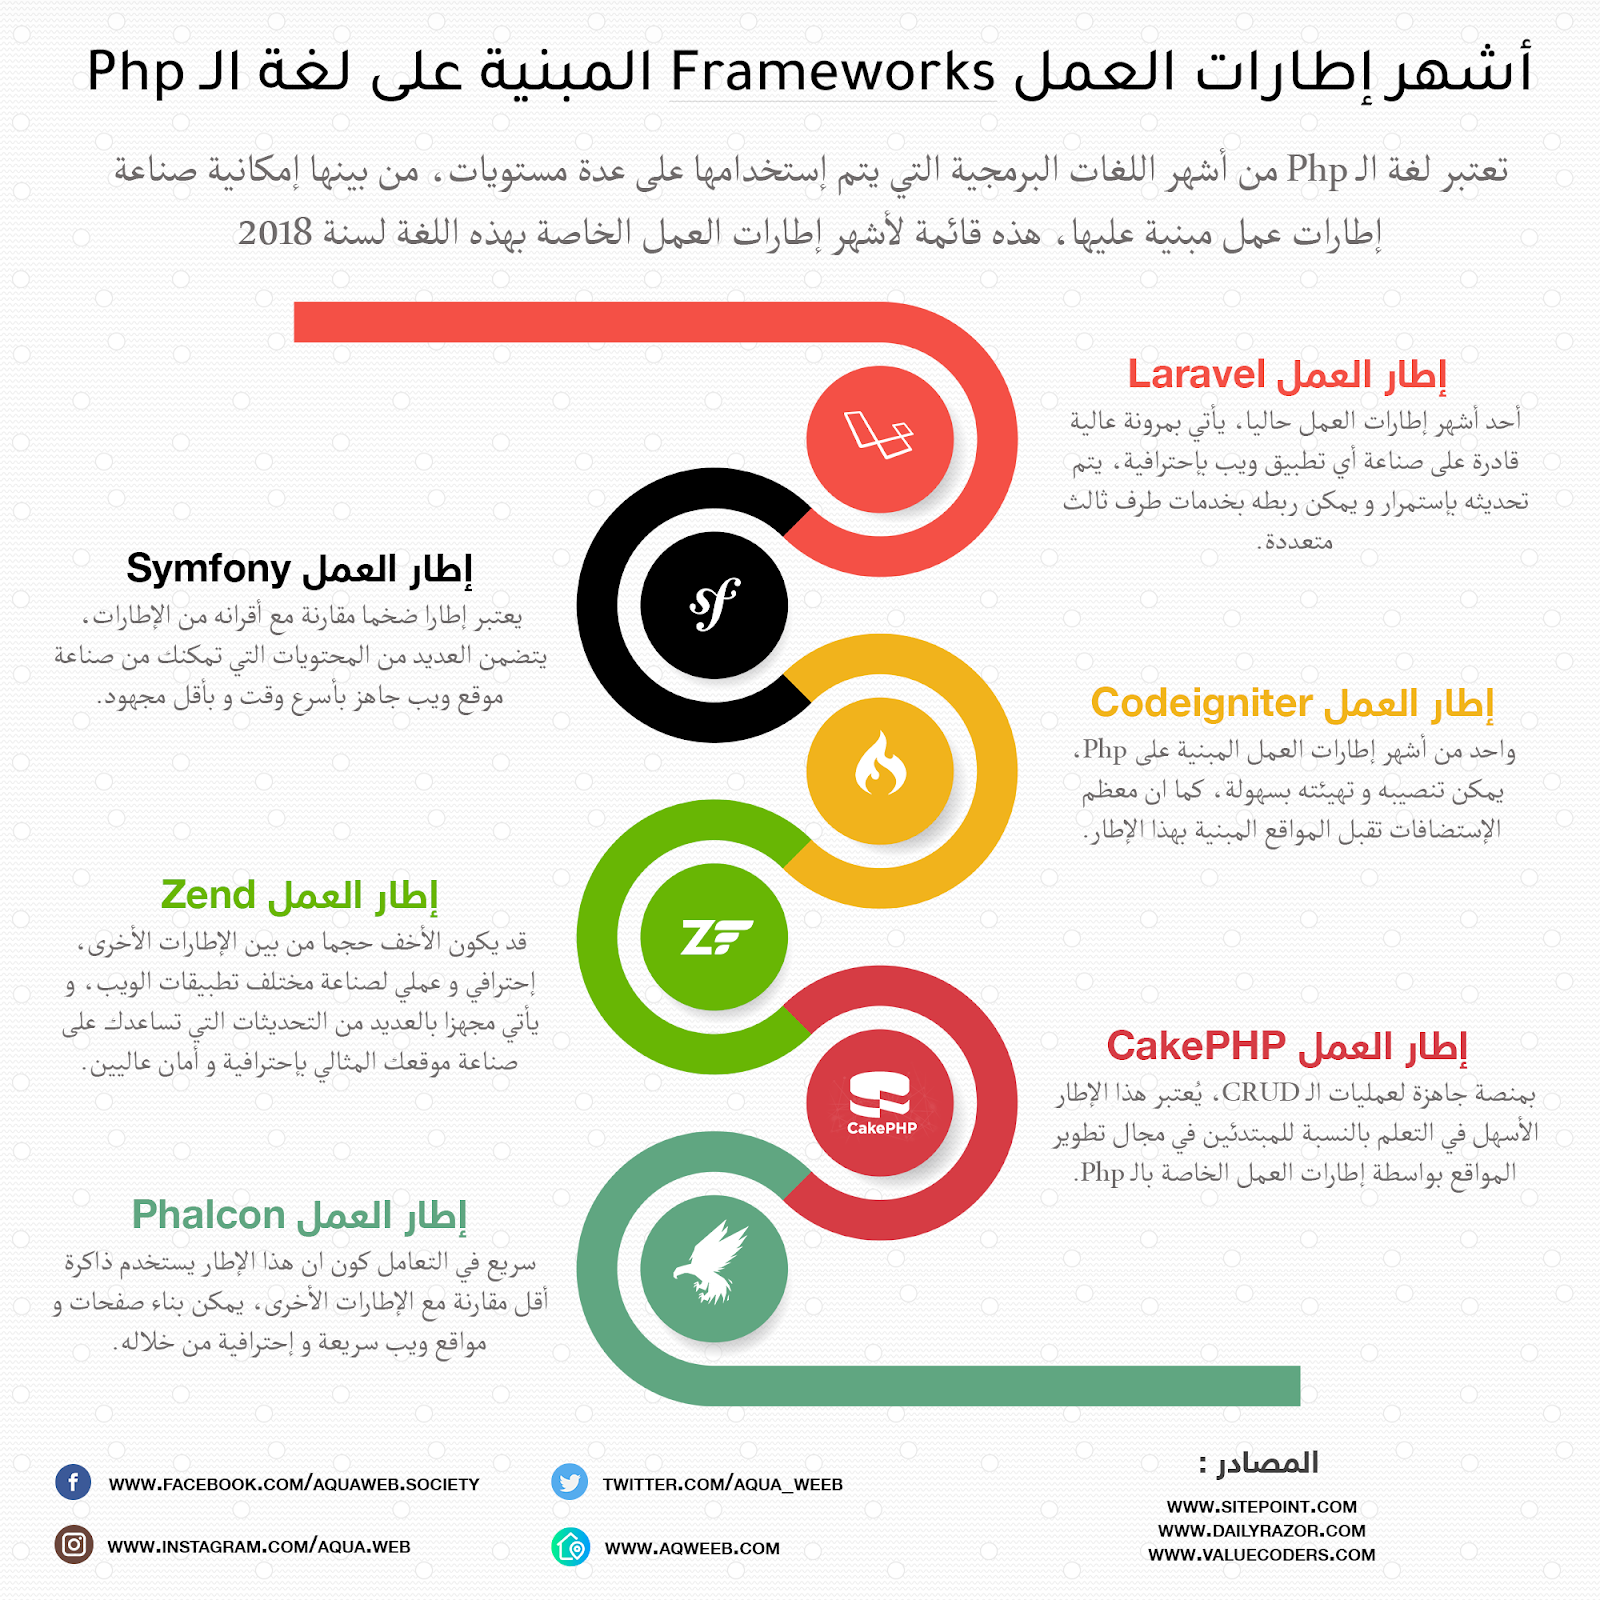 أنفوجرافيك : أشهر إطارات العمل Frameworks المبنية على لغة البرمجة Php